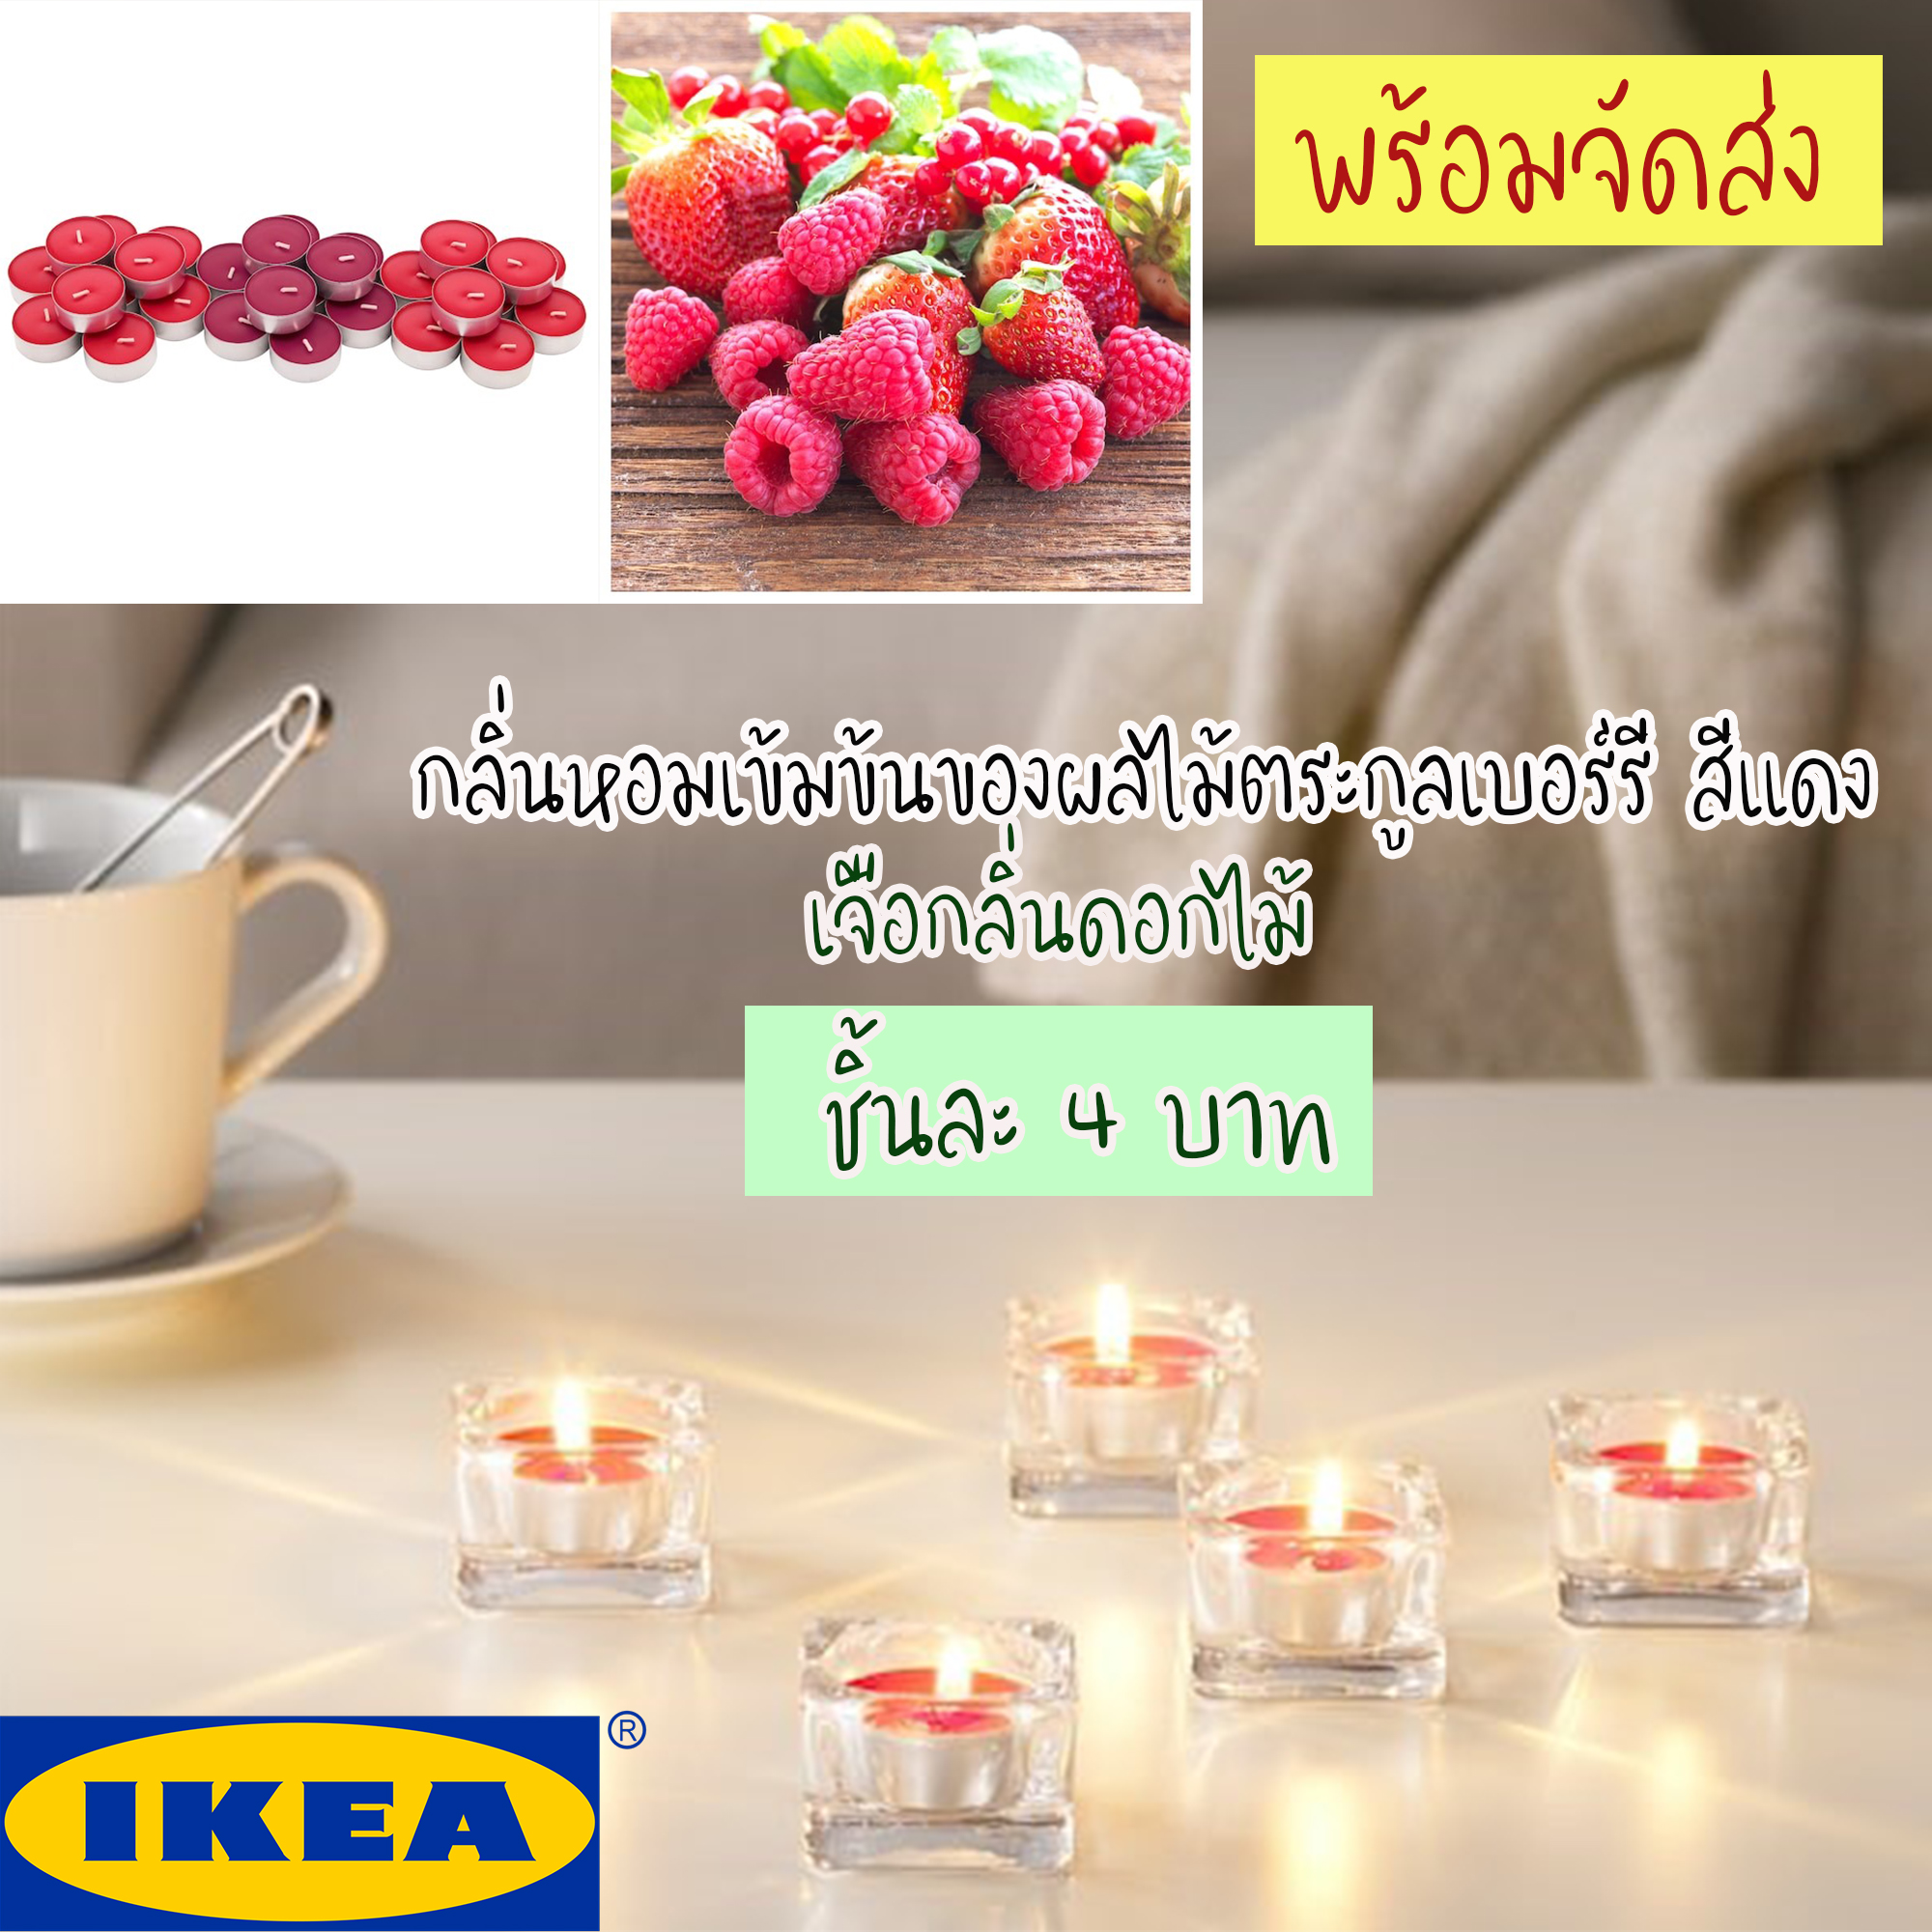 IKEA SINNLIG เทียนทีไลท์ หอมกลิ่นหอมเข้มข้นของผลไม้ตระกูลเบอร์รี สีแดง เจือกลิ่นดอกไม้ ชิ้นละ 4 บาท